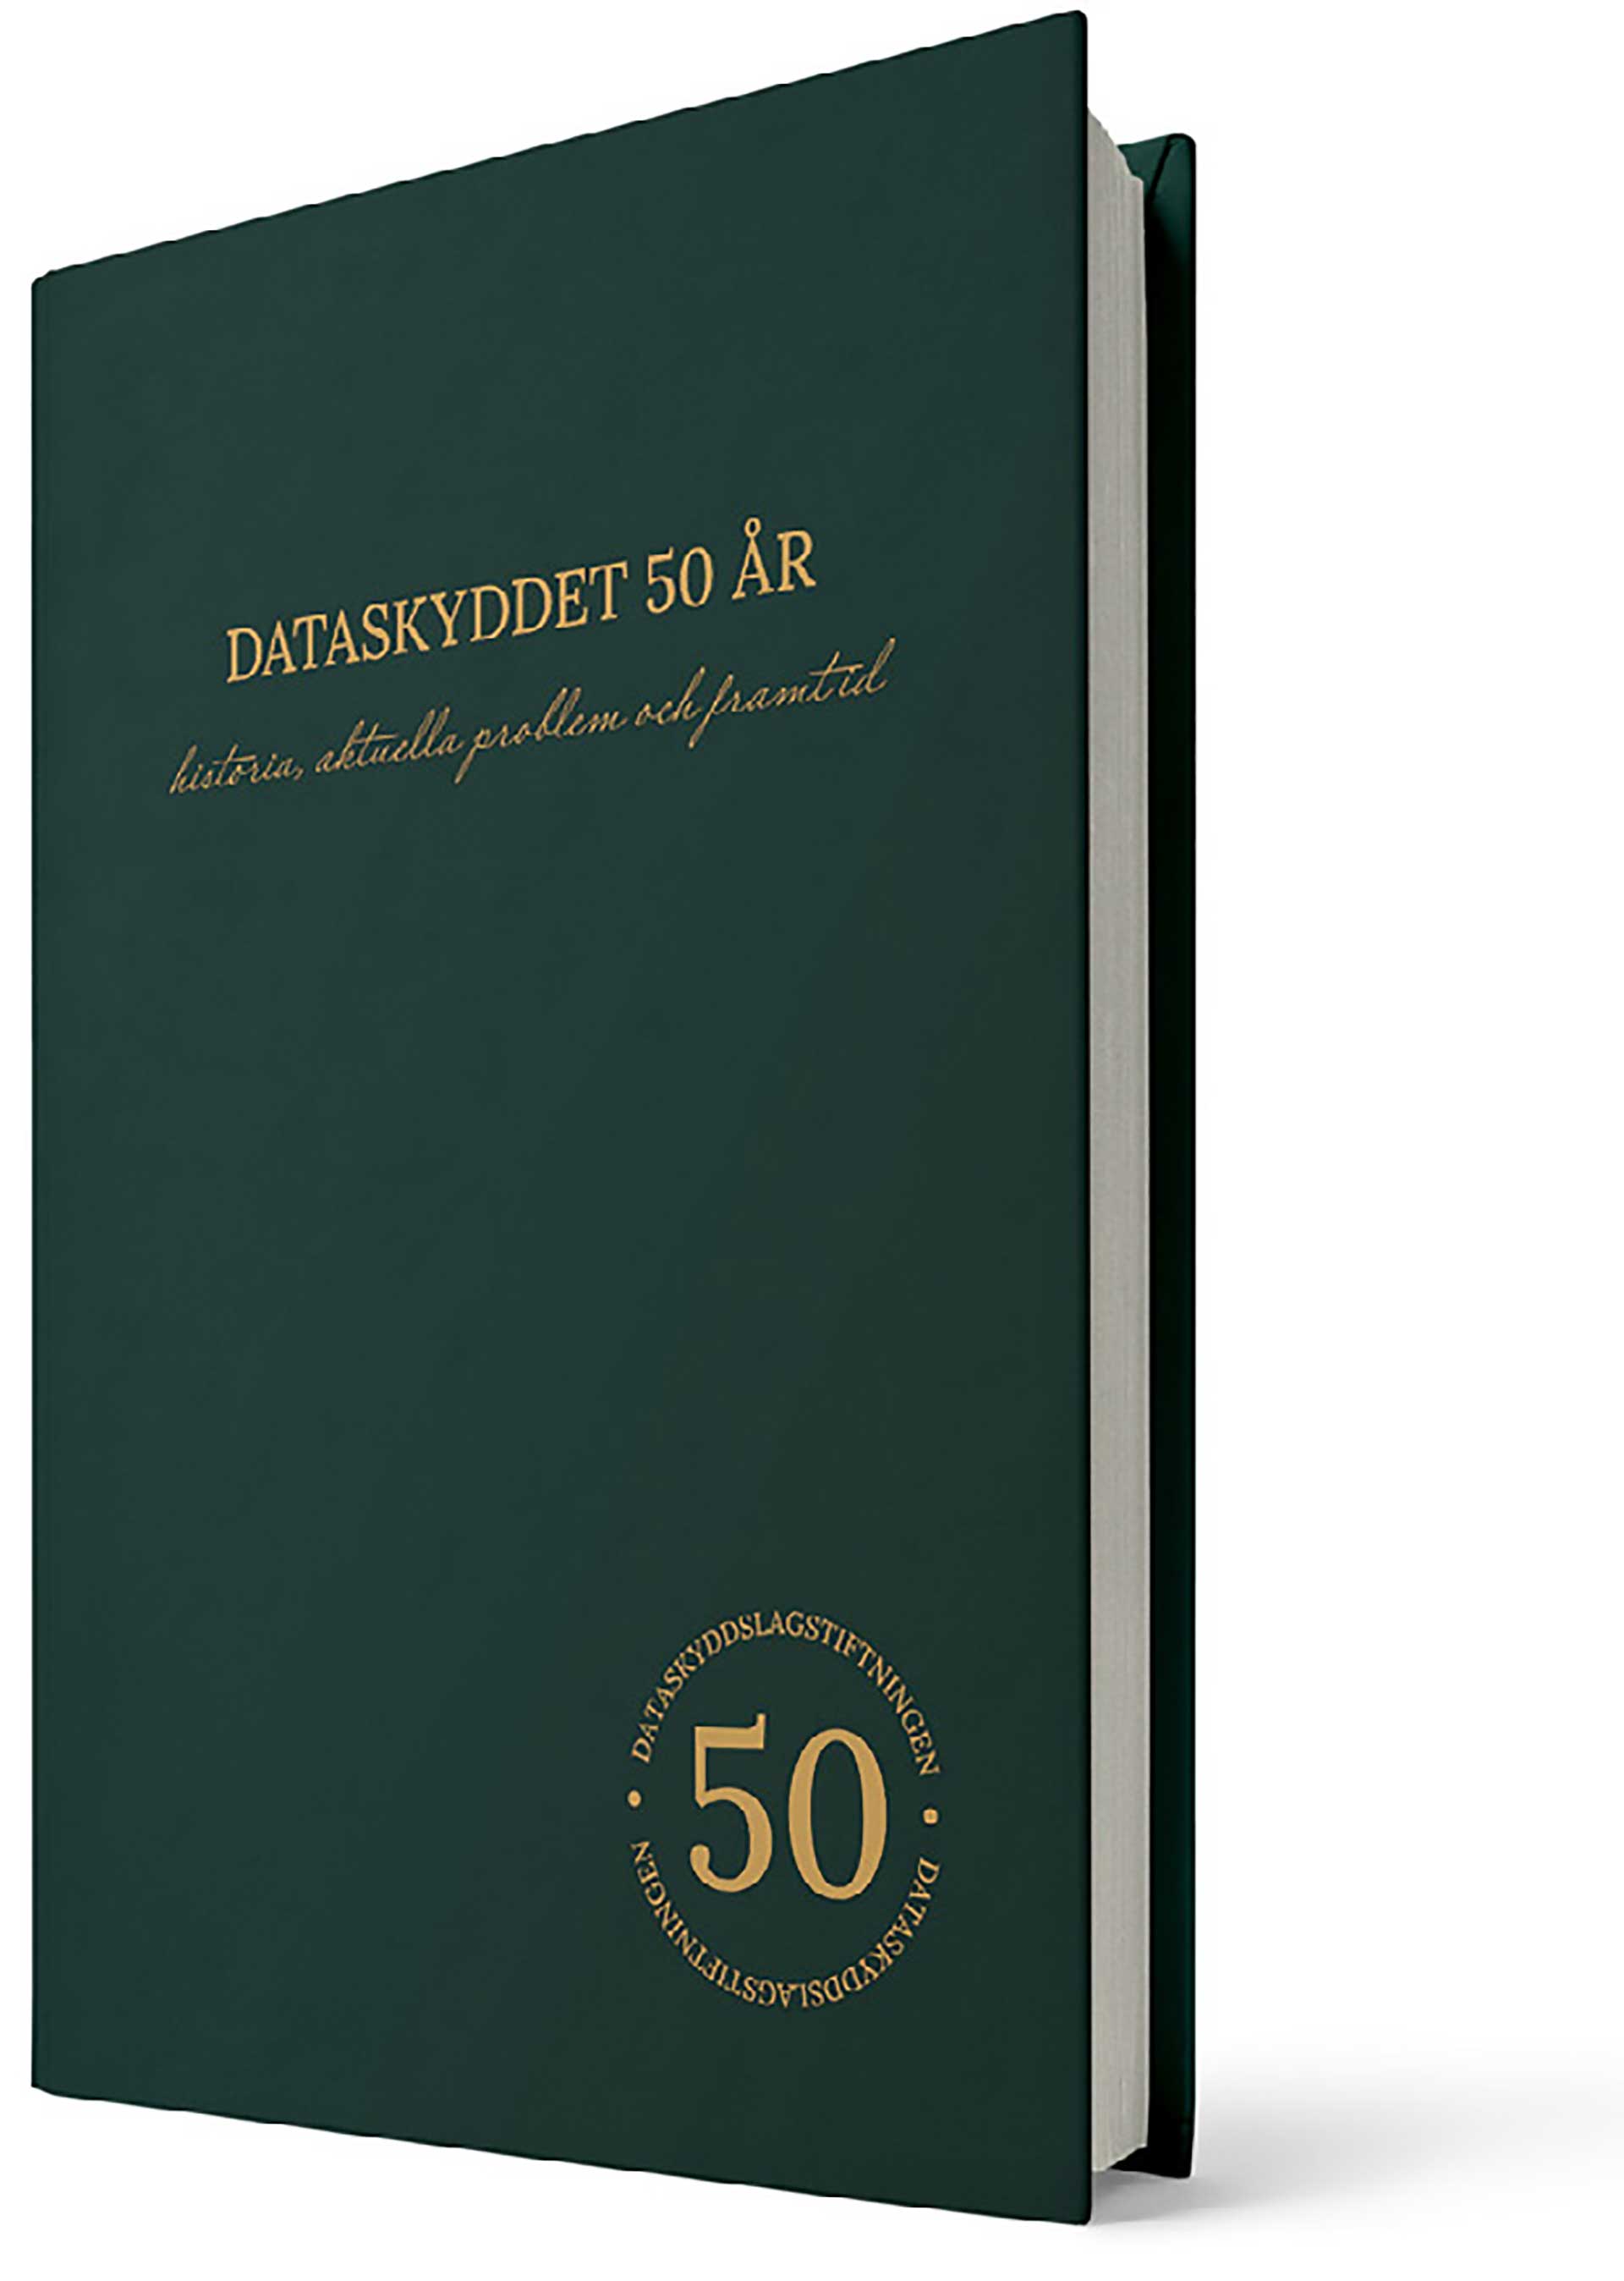 Stående mörkgrön bok med guldskrift om dataskydd 50 år, illustrasjon.